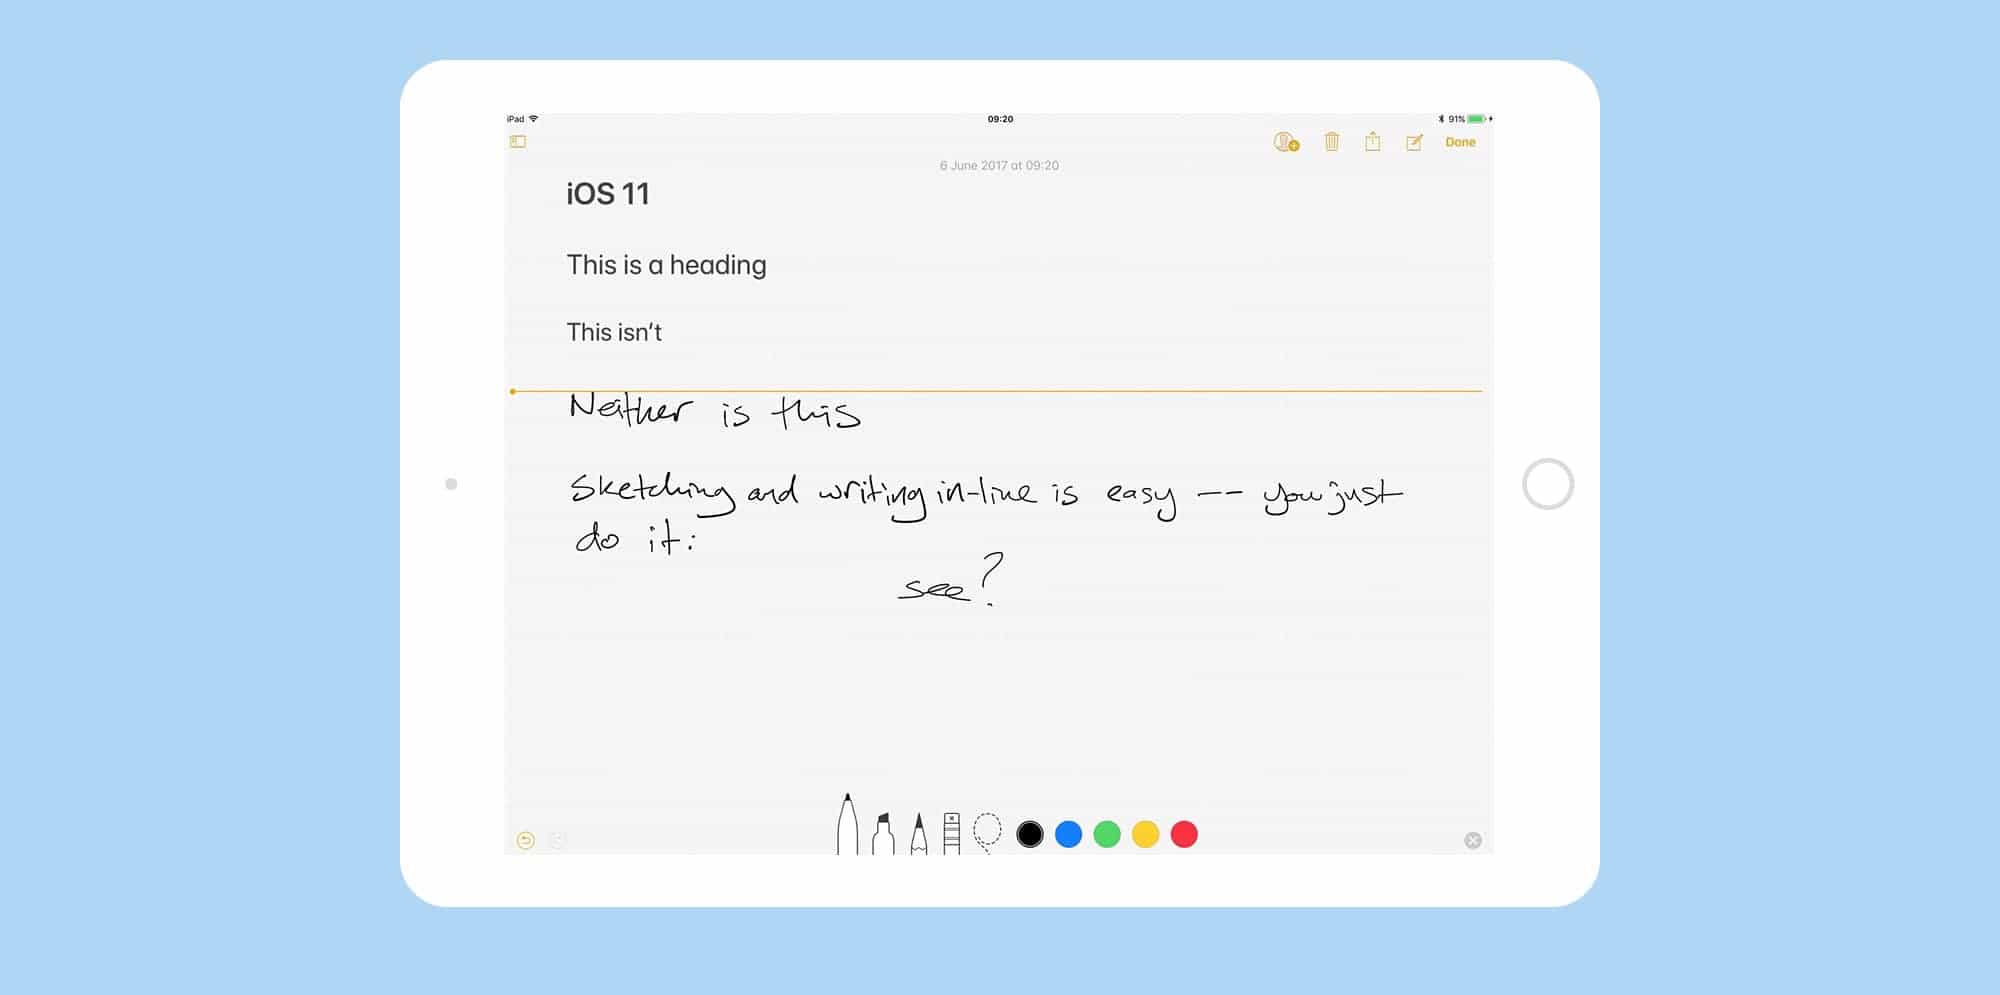 iOS 11 notes